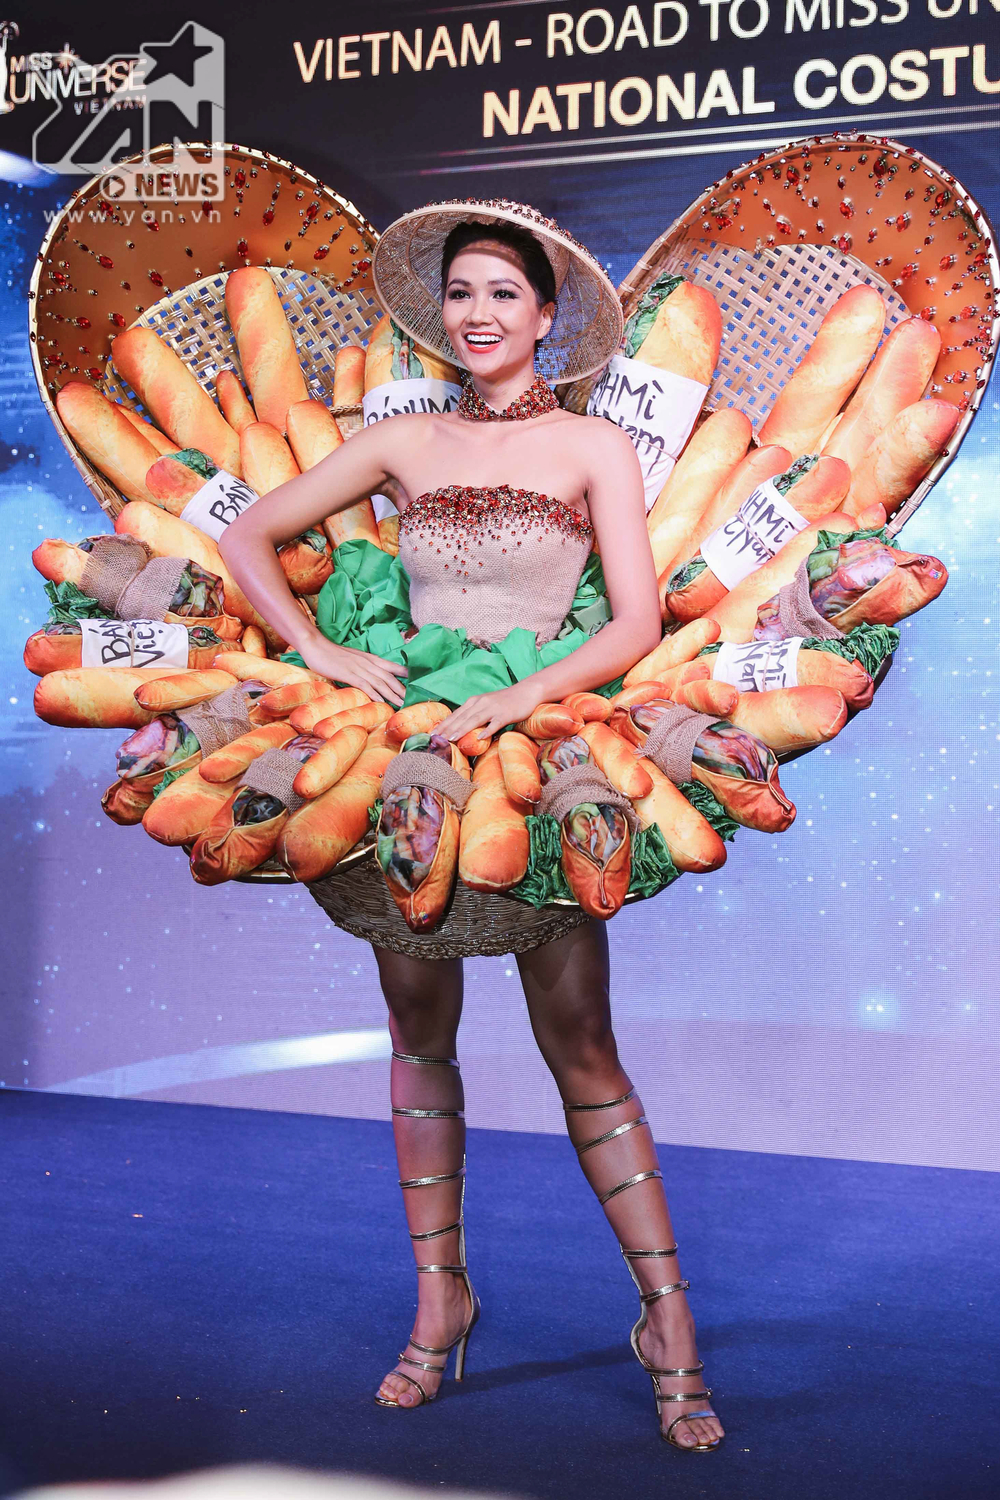 
Bộ trang phục dân tộc "Bánh mì" cũng đã được bạn bè quốc tế đón nhận 1 cách vô cùng nồng nhiệt. Ngày 29/11 sắp tới Hoa hậu H'Hen Niê sẽ lên đường sang Thái Lan tham dự cuộc thi hot nhất hành tinh.